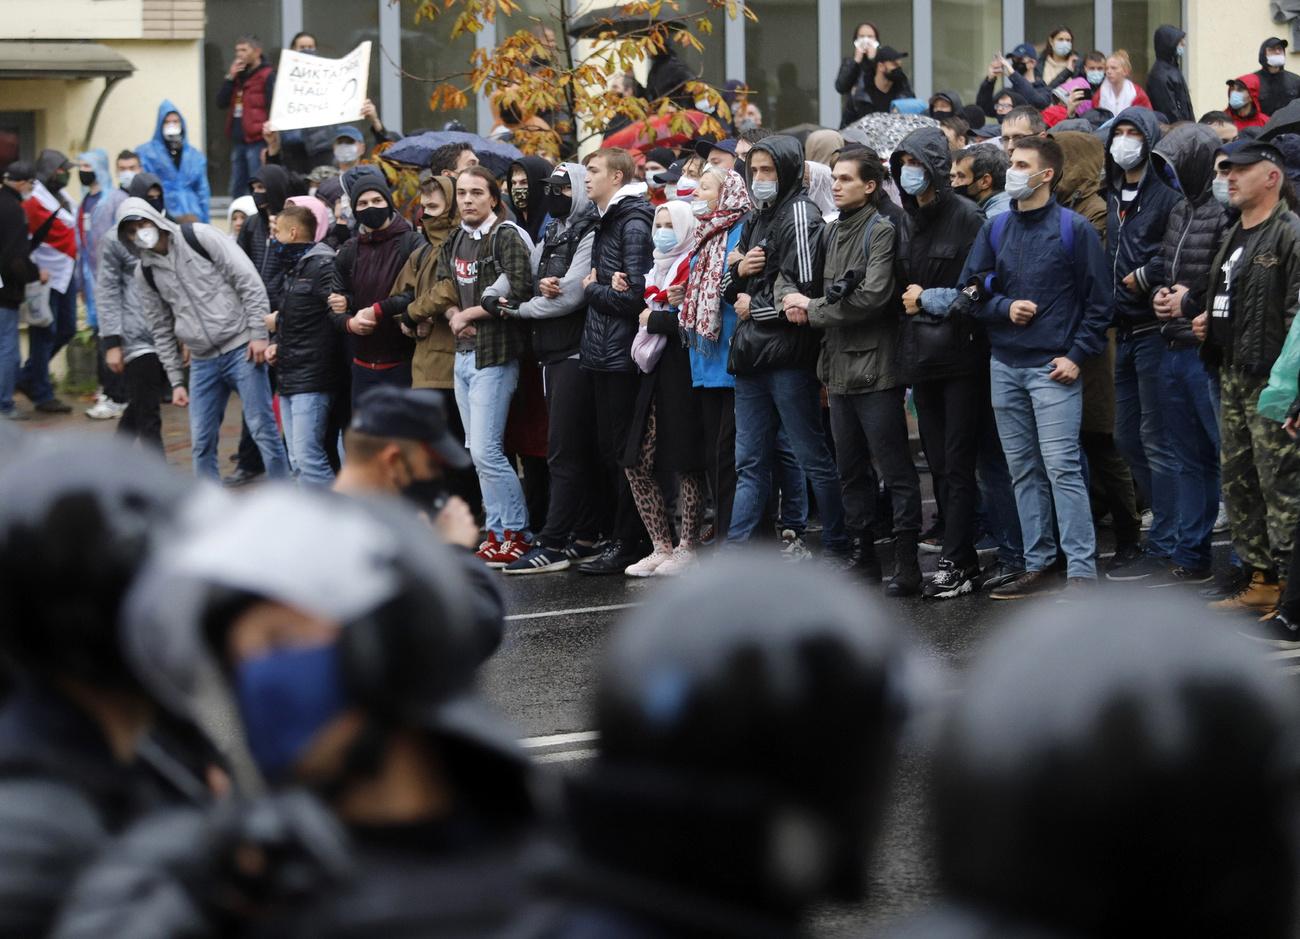 Des partisants de l'opposition bloquent une rue durant une manifestation contestant les résultats officiels de l'élection présidentielle. Minsk, Bélarussie, le 11 octobre 2020. [Keystone - AP Photo]